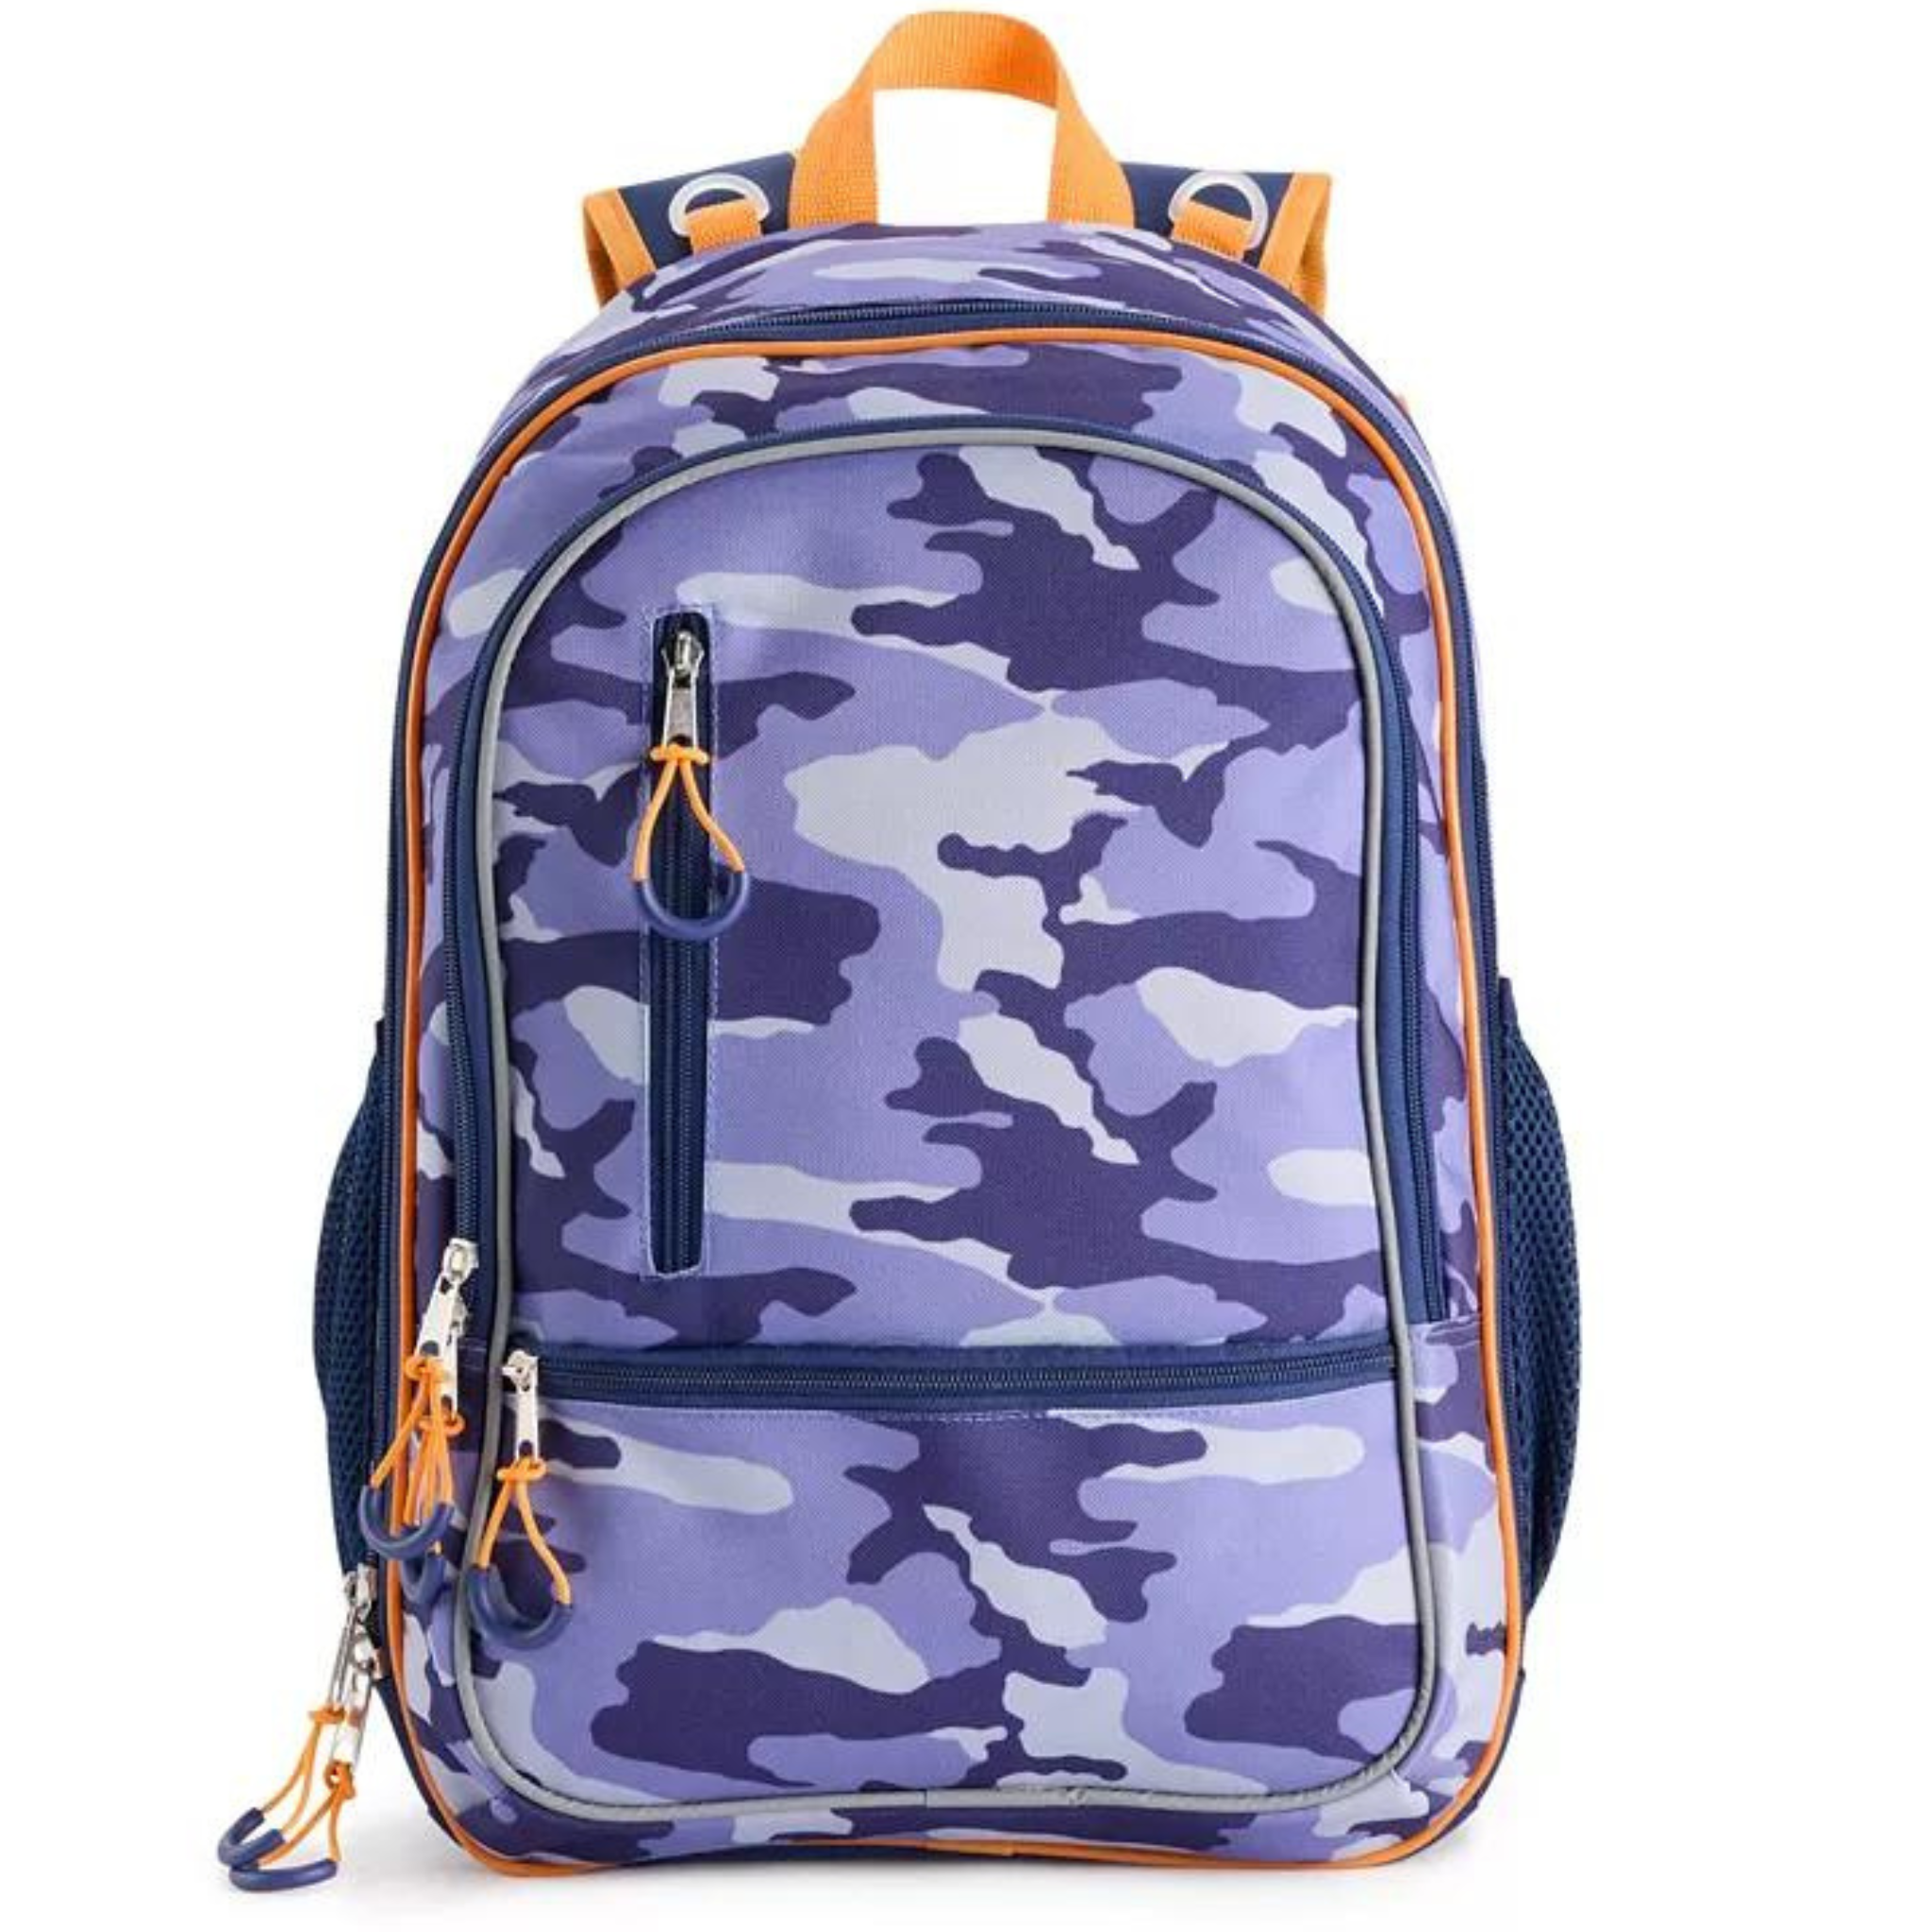 Kohl’s Kids Backpacks